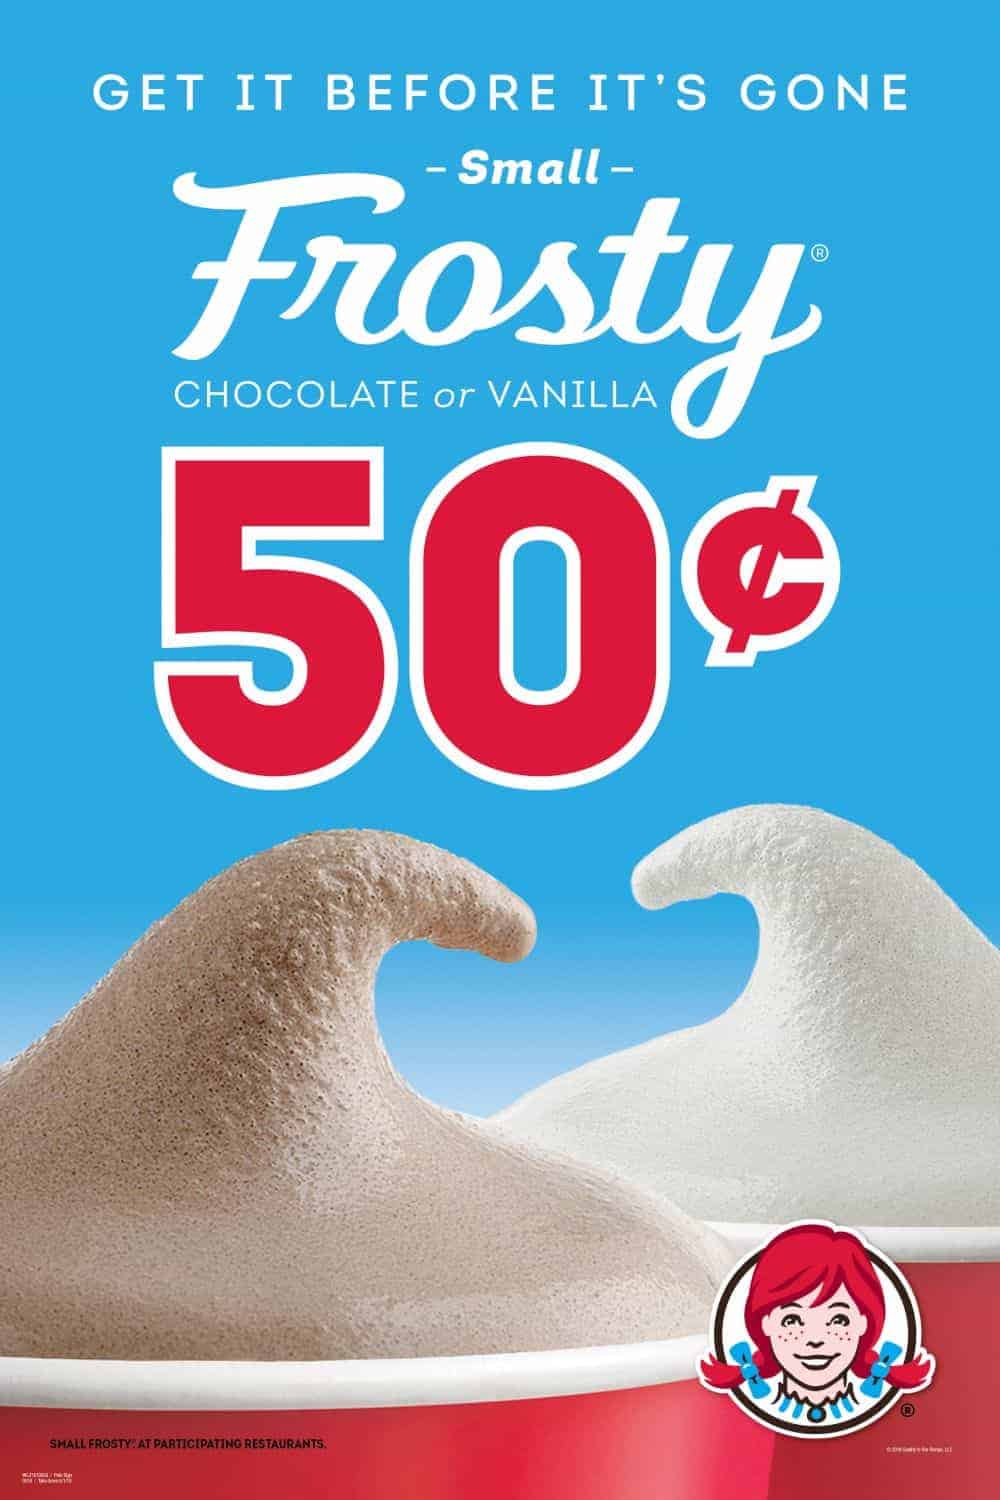 wendys 50 cent frostie advertisement